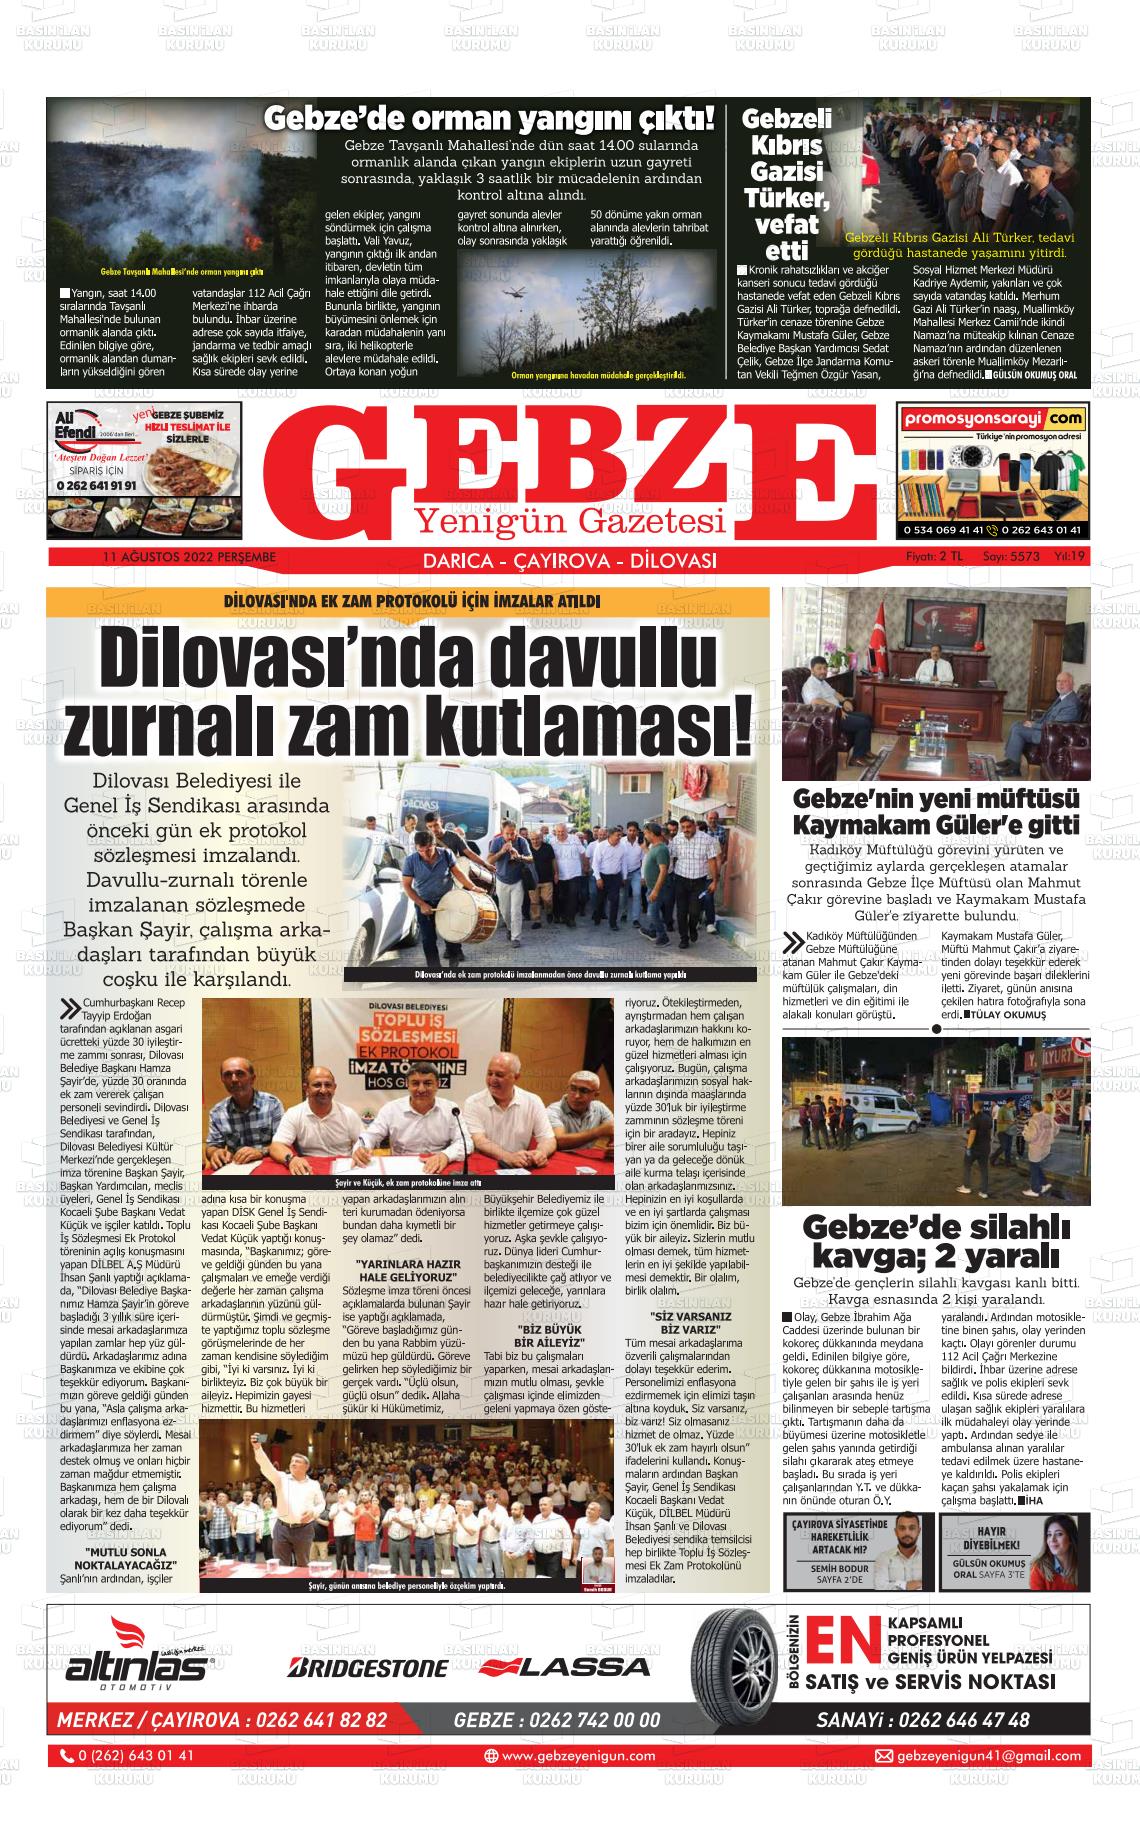 11 Ağustos 2022 Gebze Yenigün Gazete Manşeti